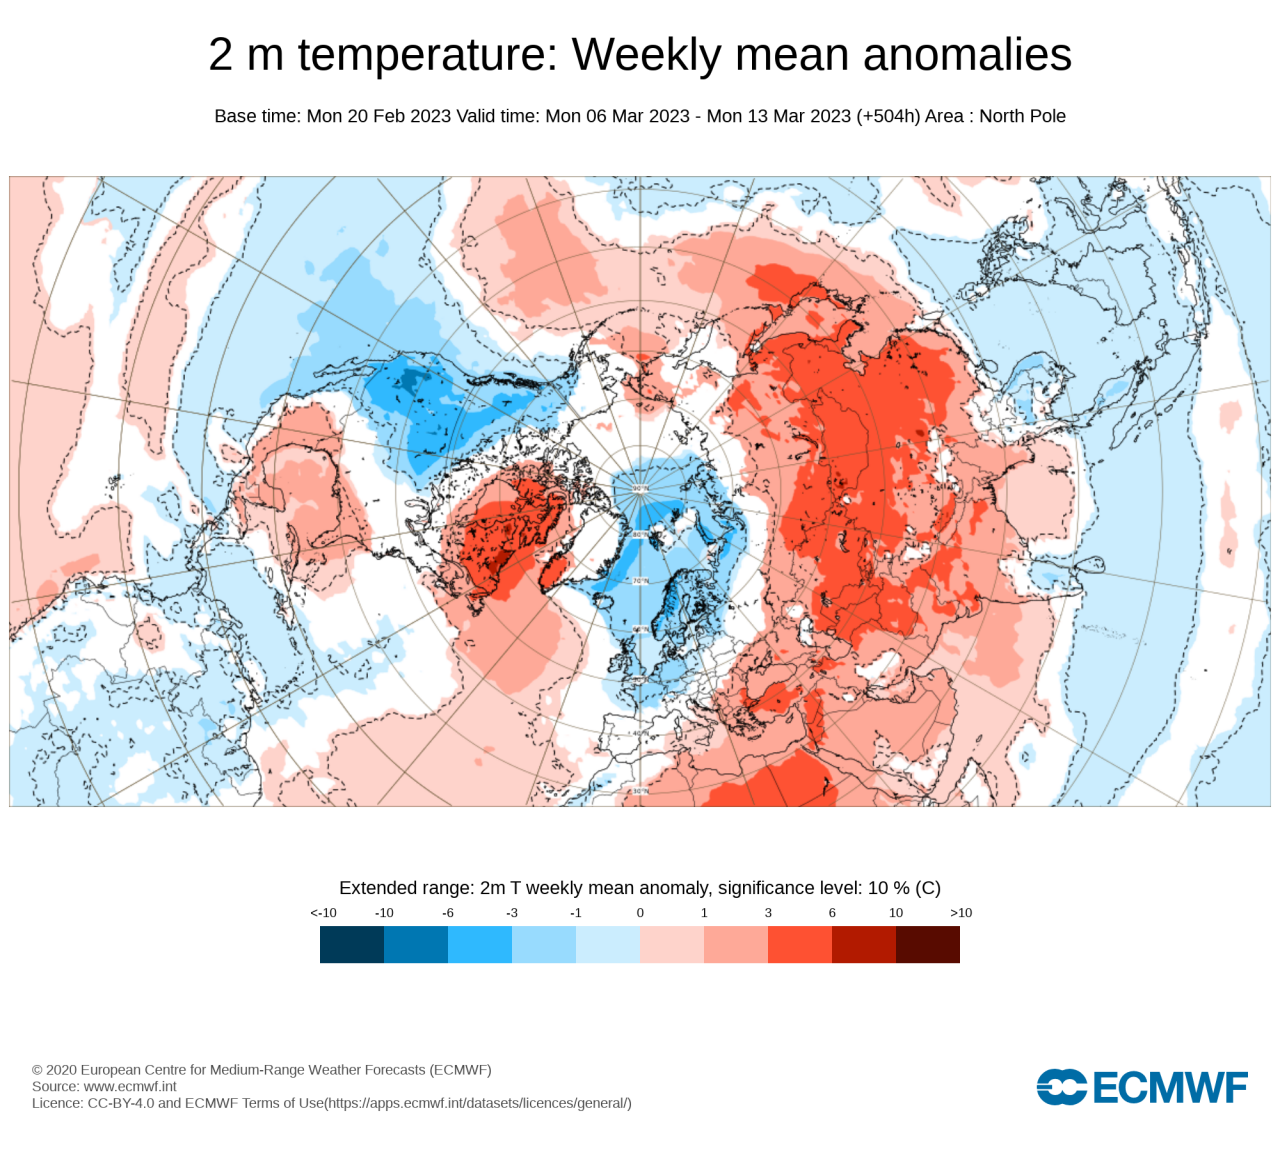 anomalie temperature a 2m attese in marzo, fonte Ecmwf